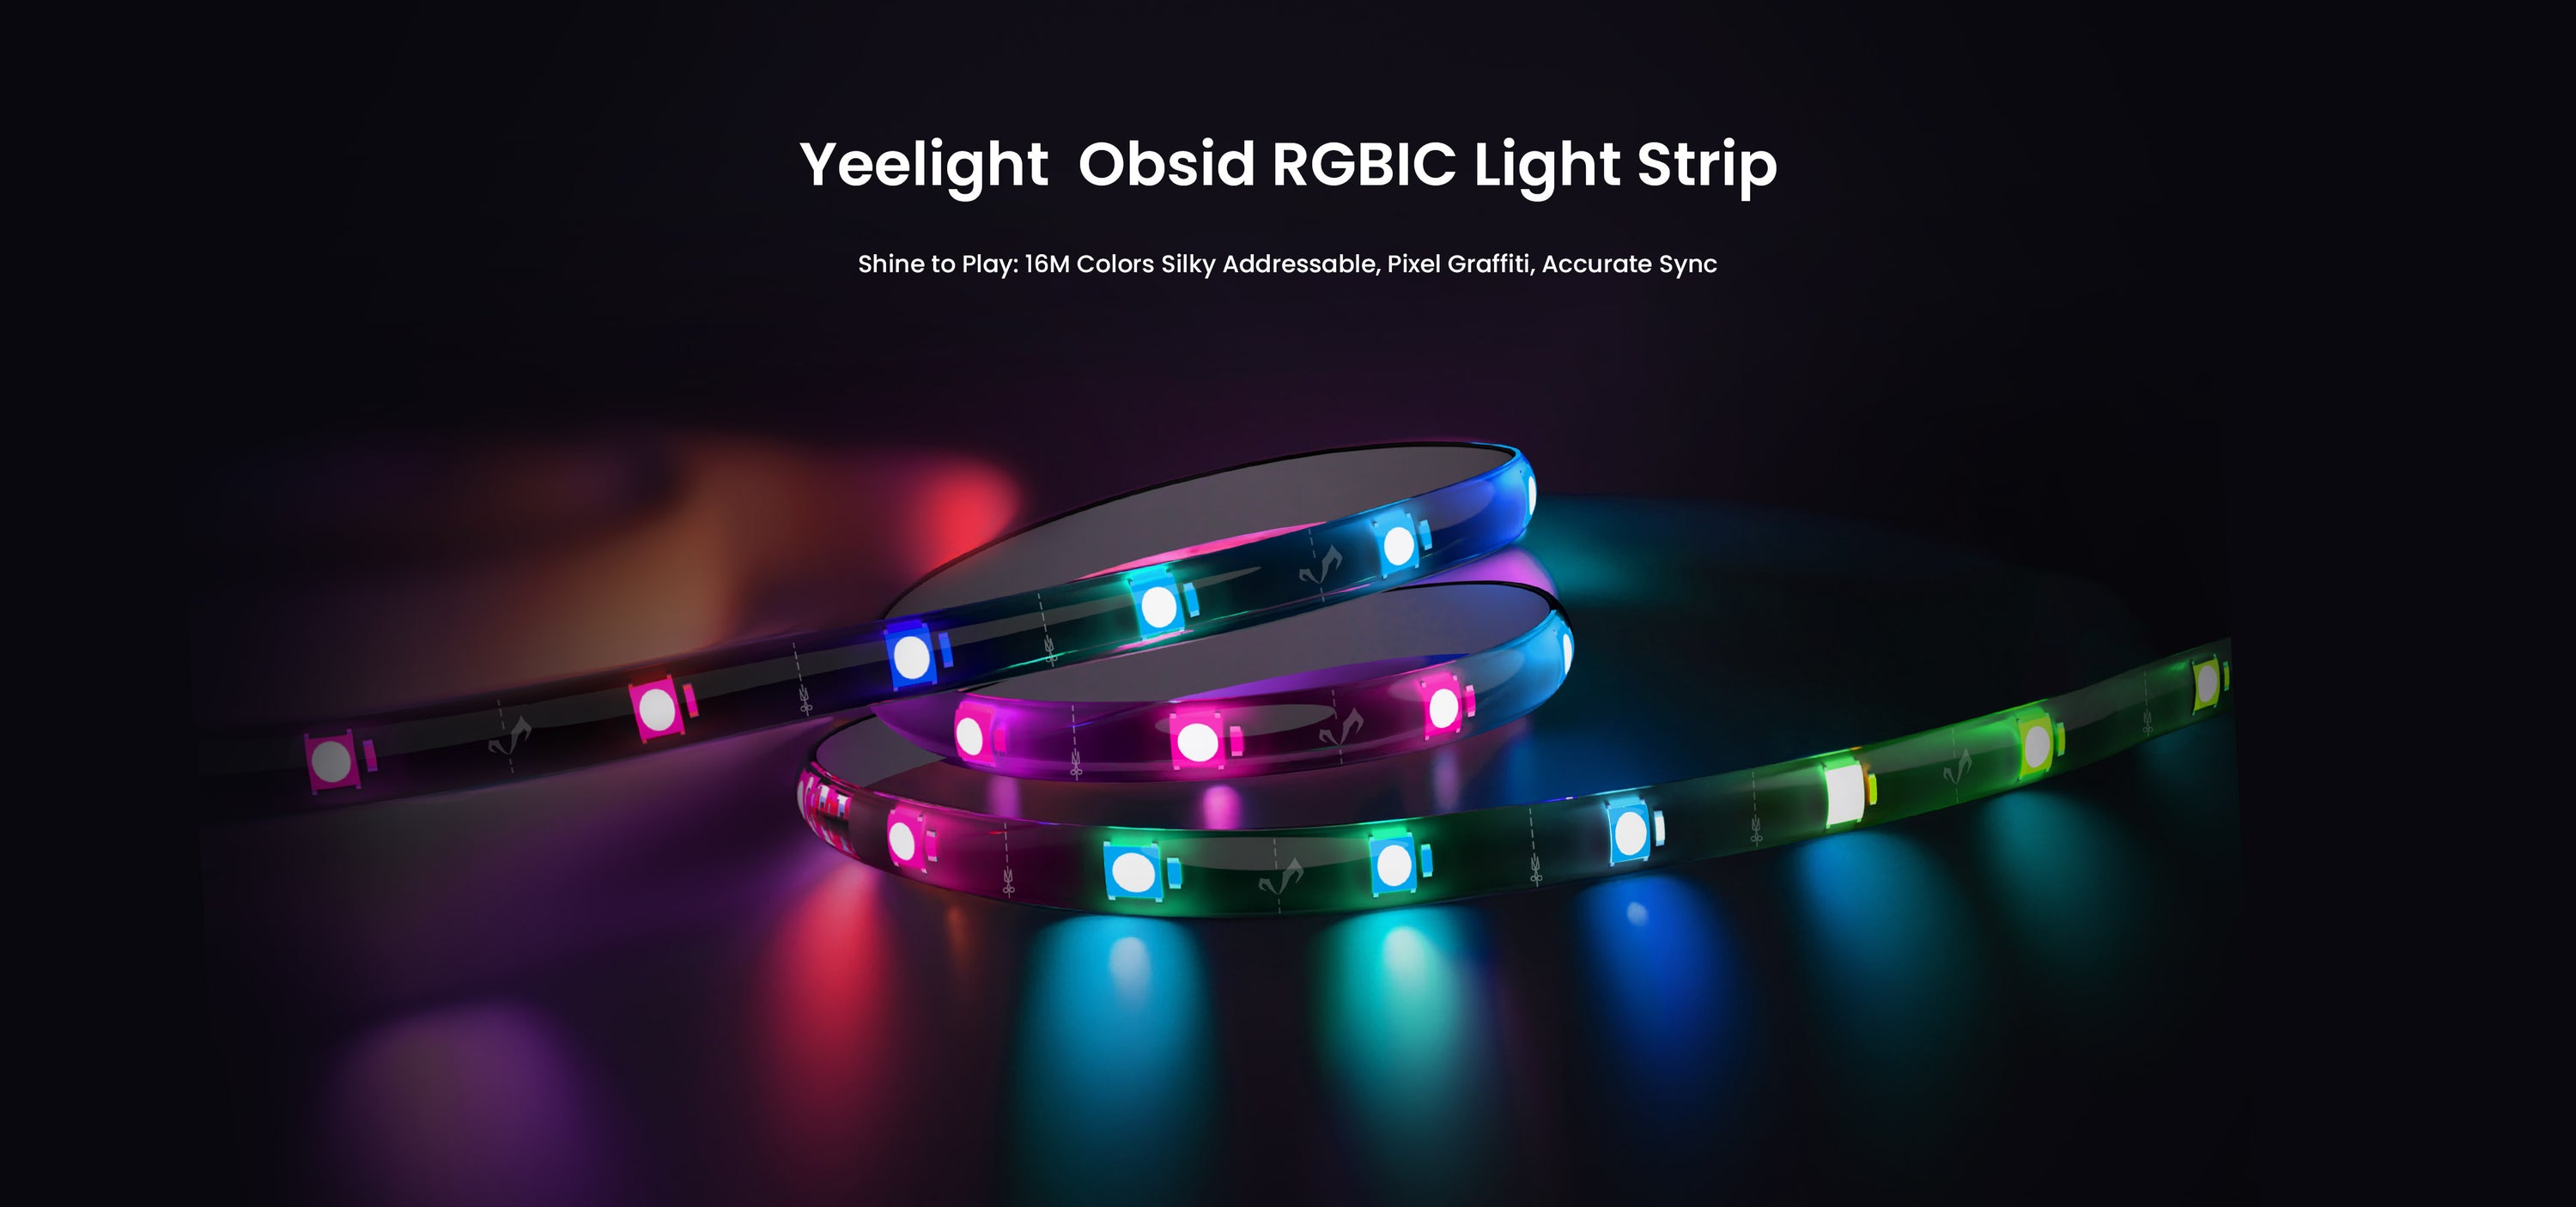 Yeelight anuncia la tira de luces LED Obsid RGBIC, que puede sincronizarse con música y juegos